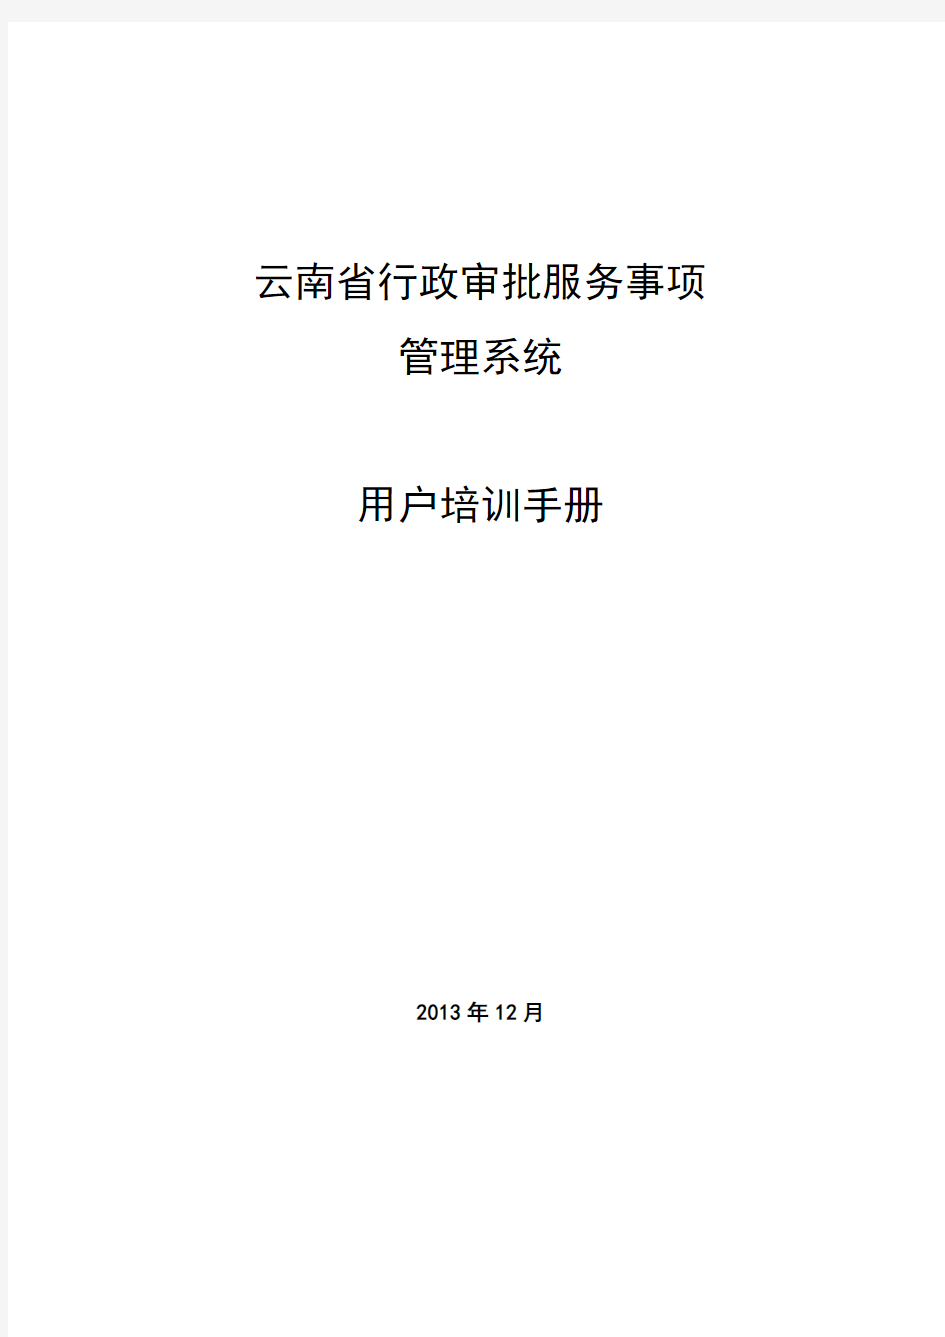 云南省政务服务事项管理系统_用户手册